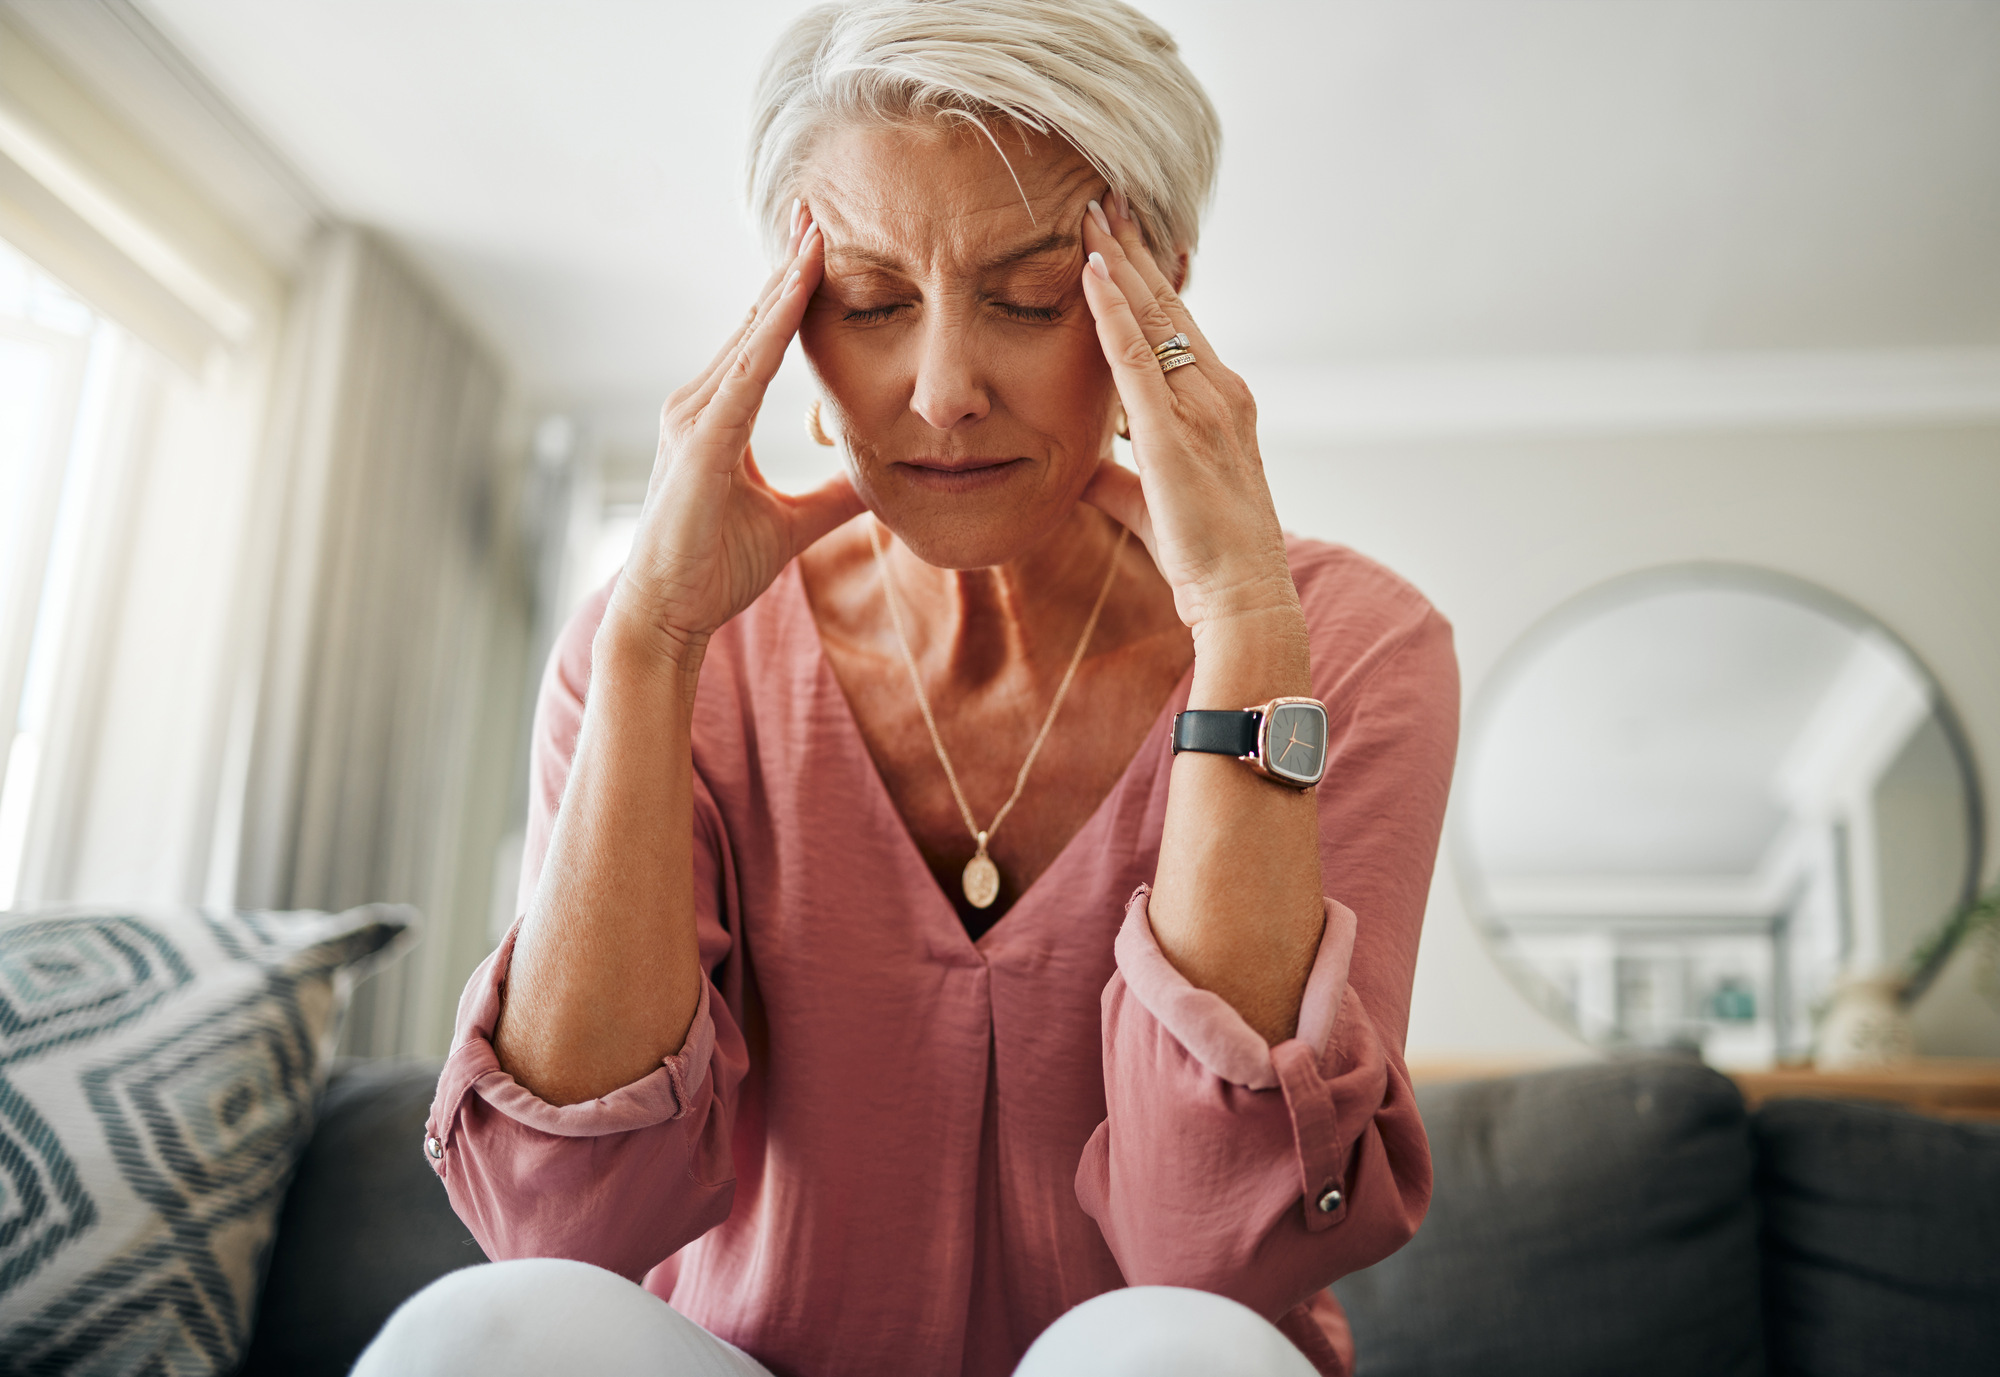 A senior woman having a headache